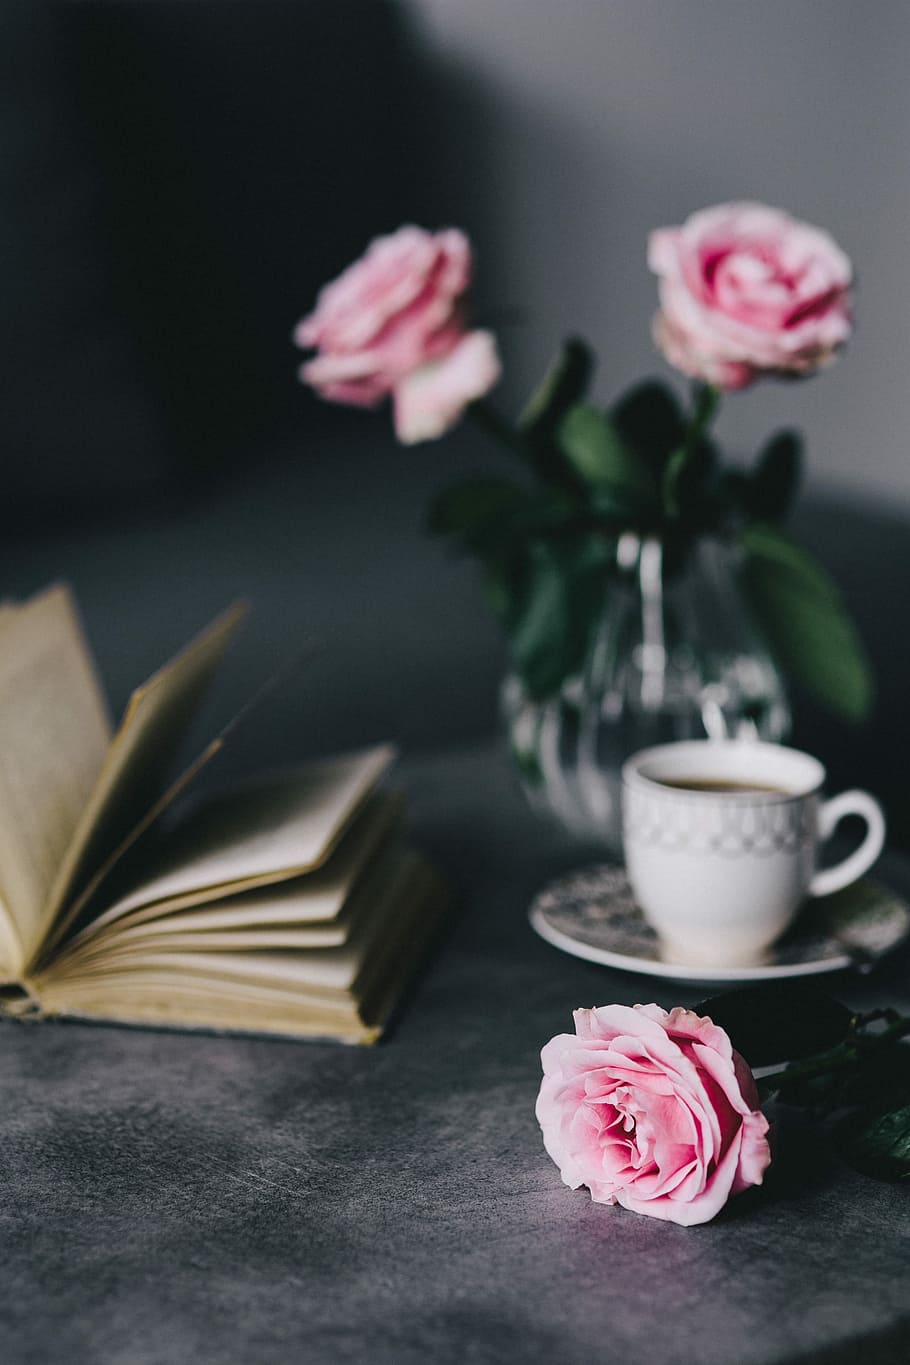 encantador, rosas, libro, café, rosa, interior, descanso, relax, esencial, lectura